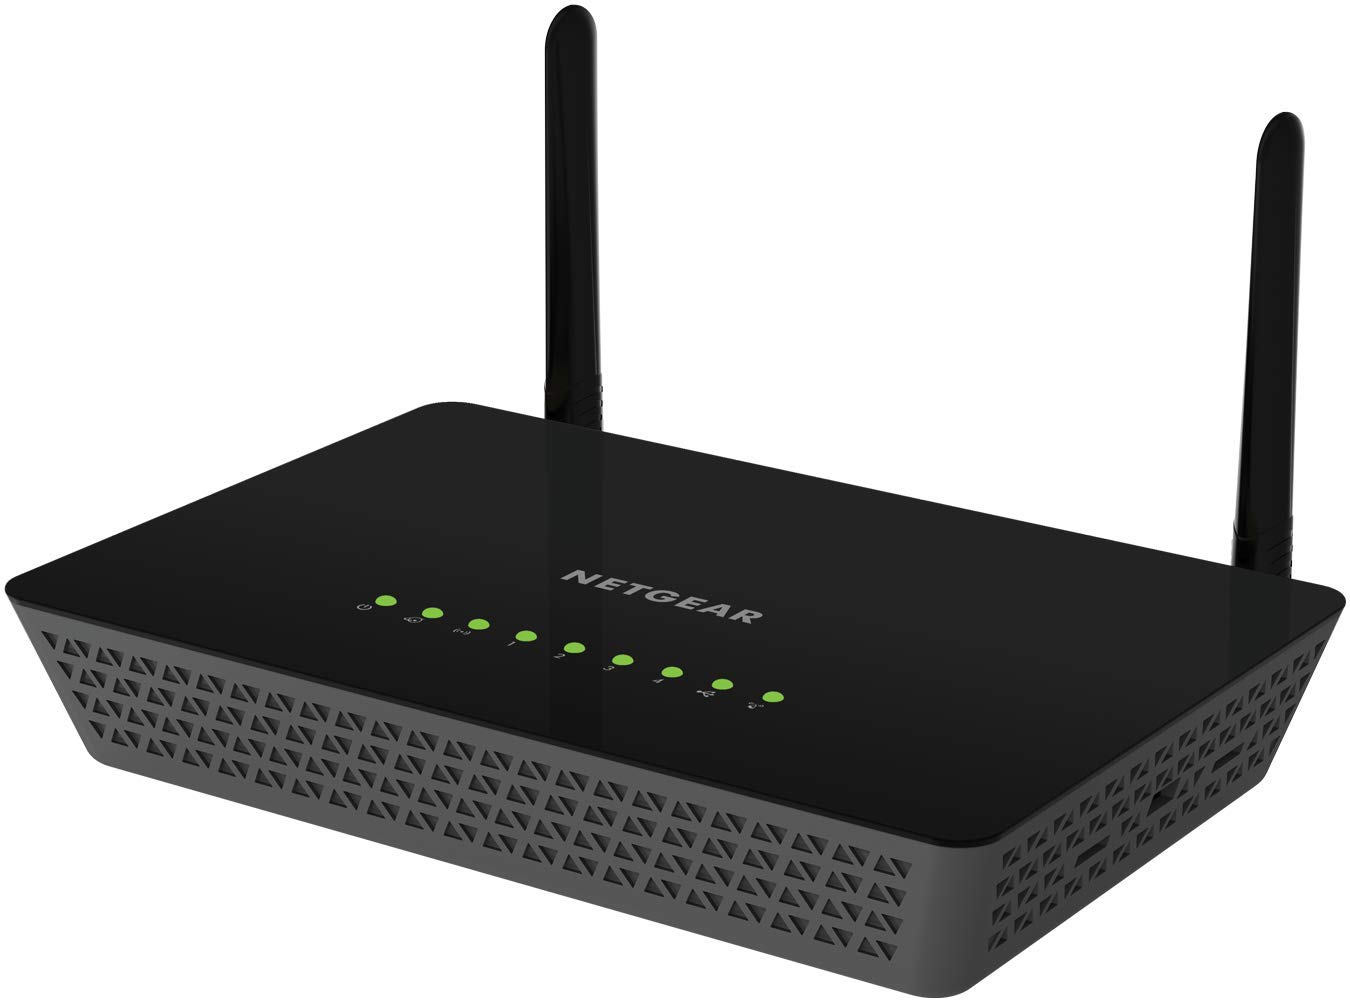 Netgear ac1200 smart wifi router with external antennas user manual 2017